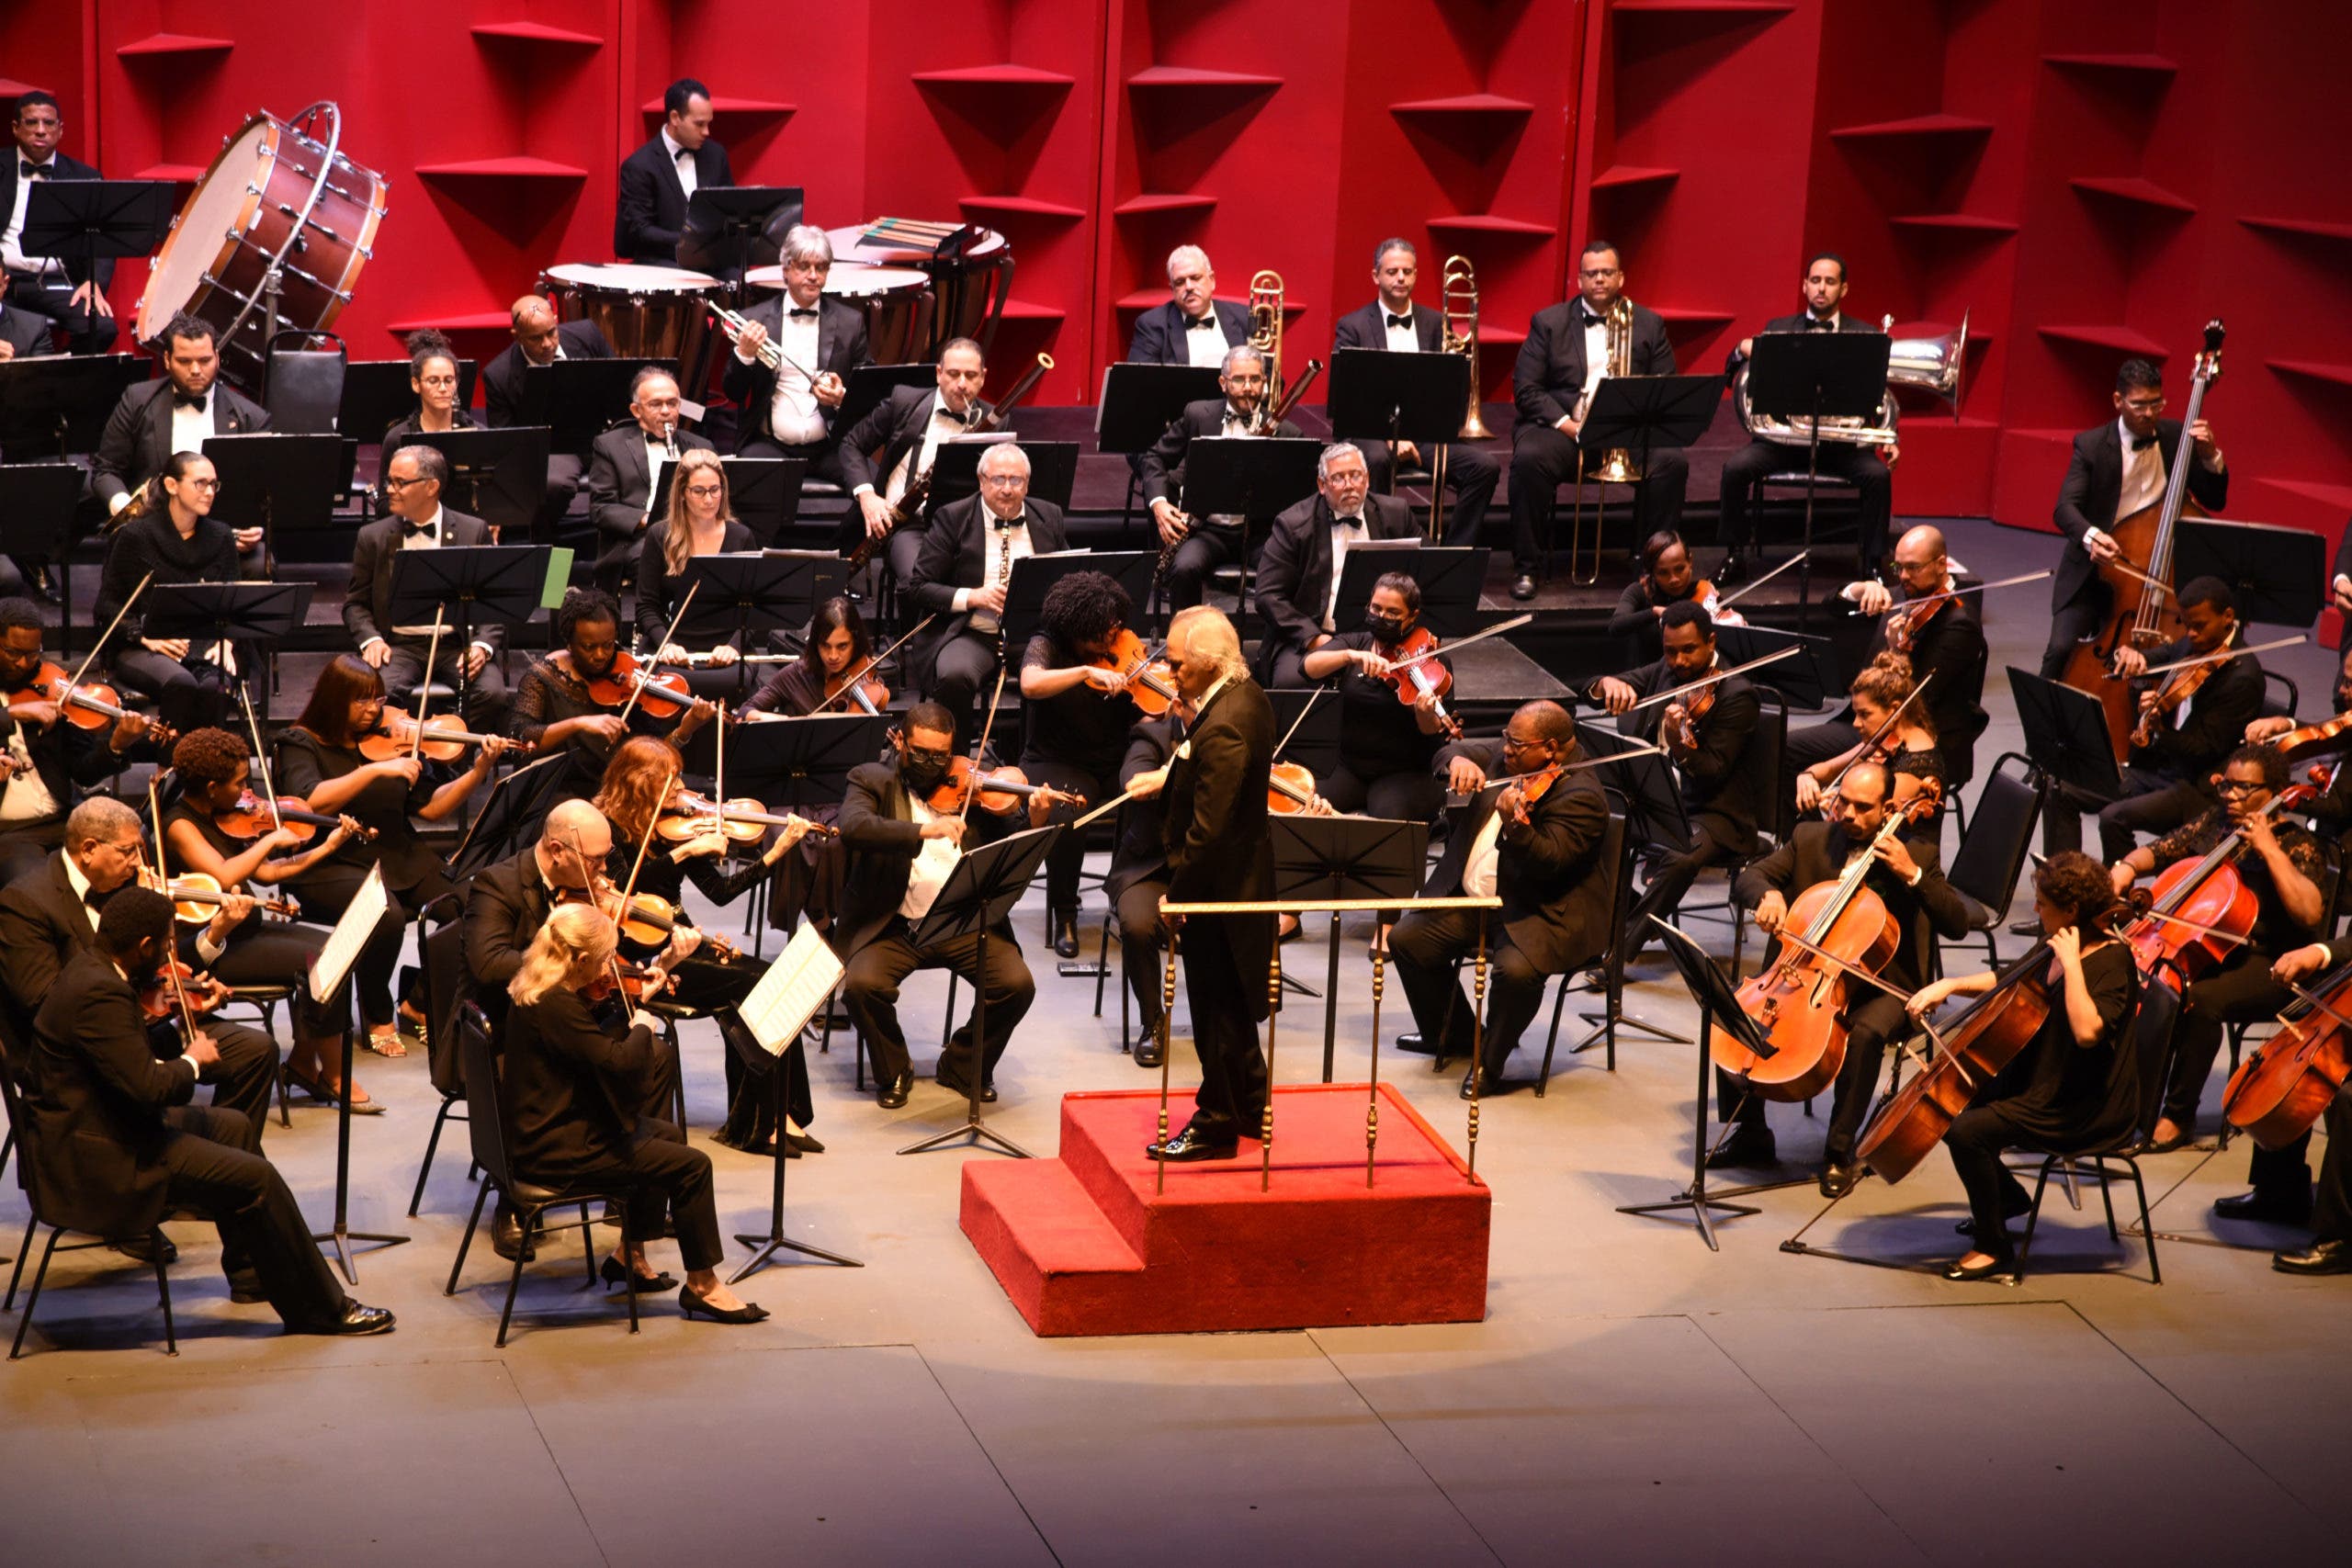 Sinfónica deleita al público con “Sinfonías de Shostakovich y Beethoven” en concierto “Temporada Sinfónica 2022”